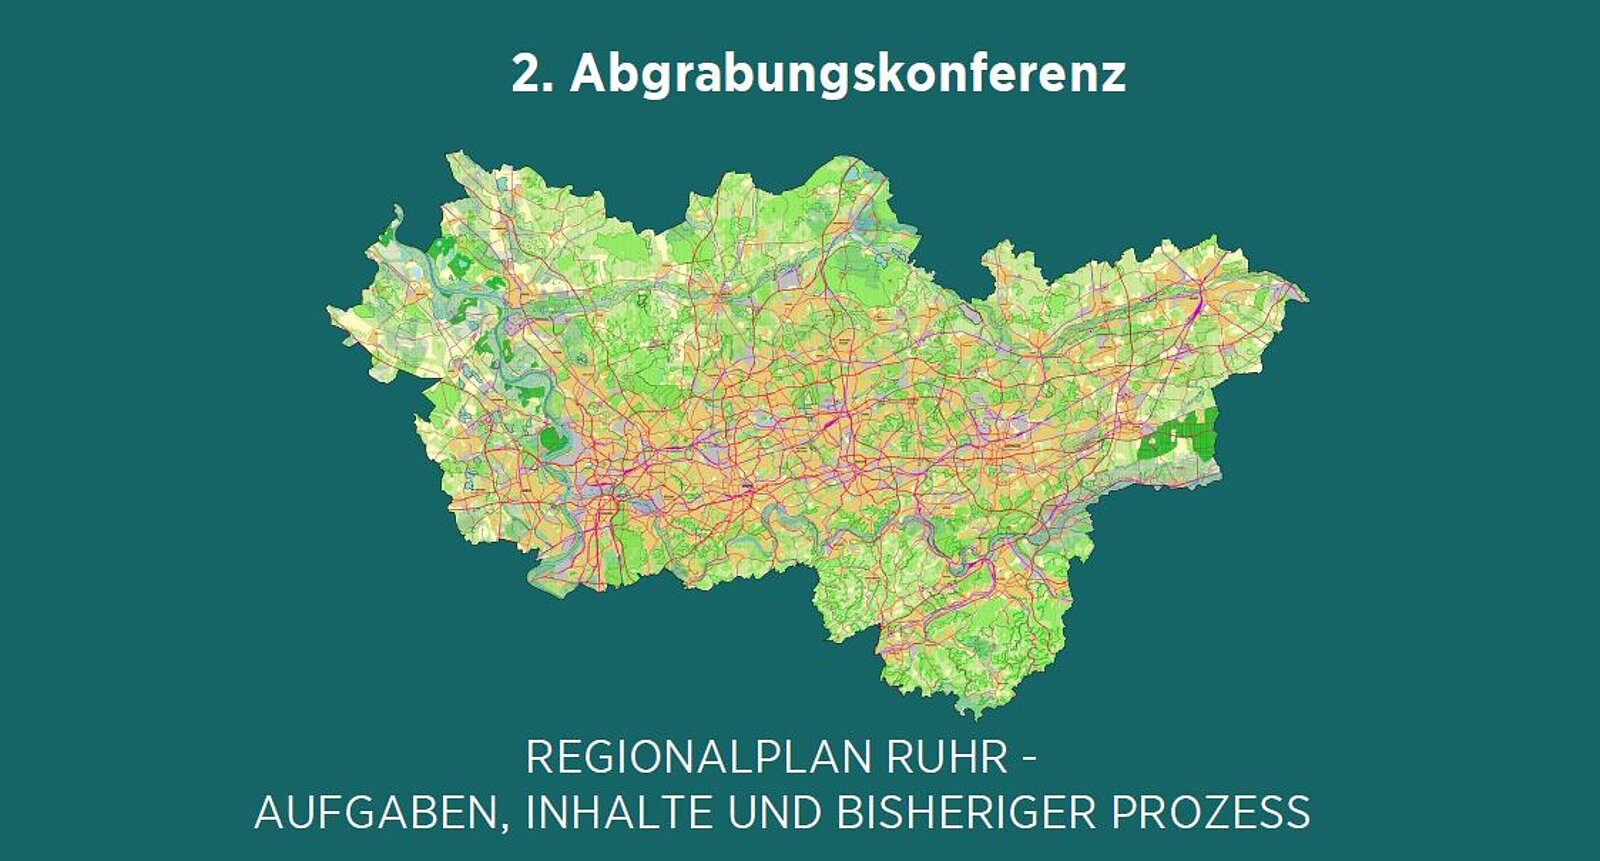 Deckblatt der Präsentation mit Ruhrgebietskarte